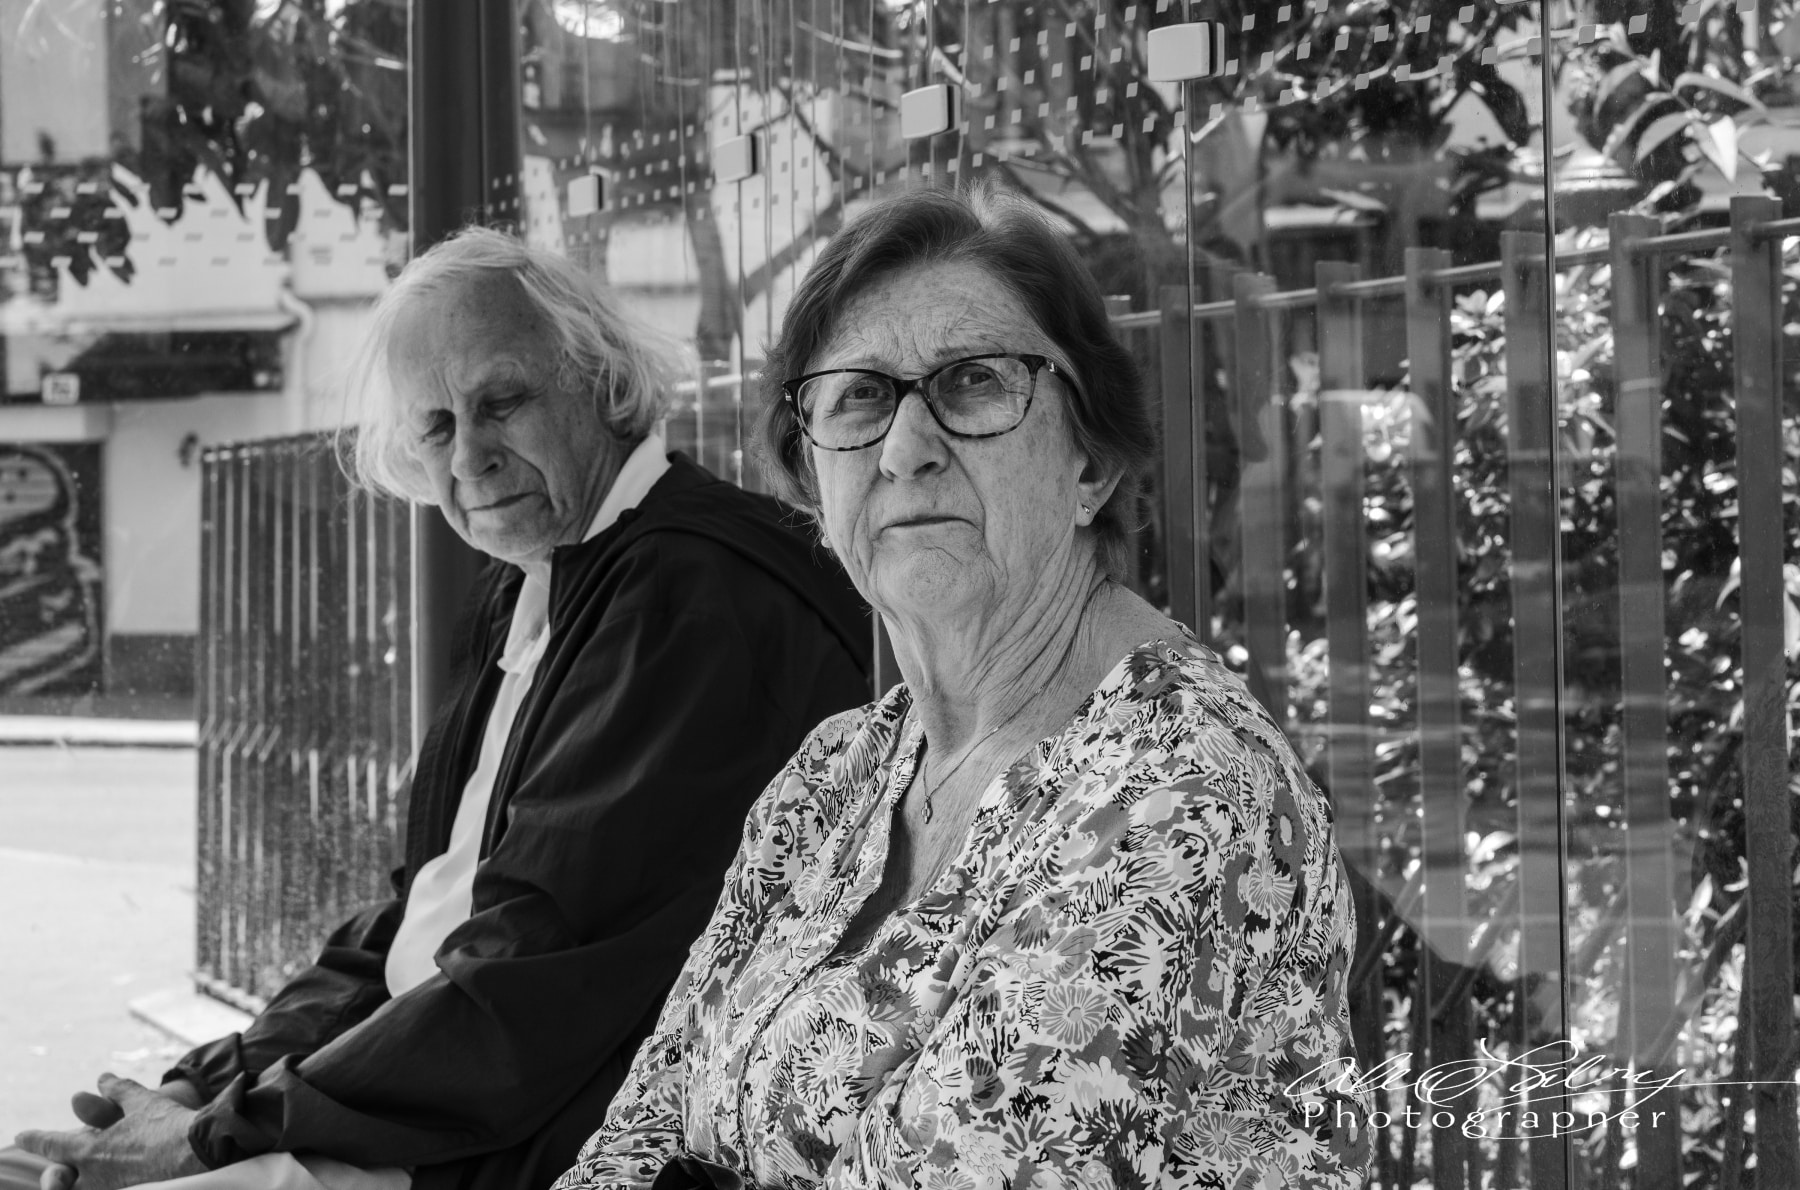 Couple at bus stop, Marais Quarter, Paris, France